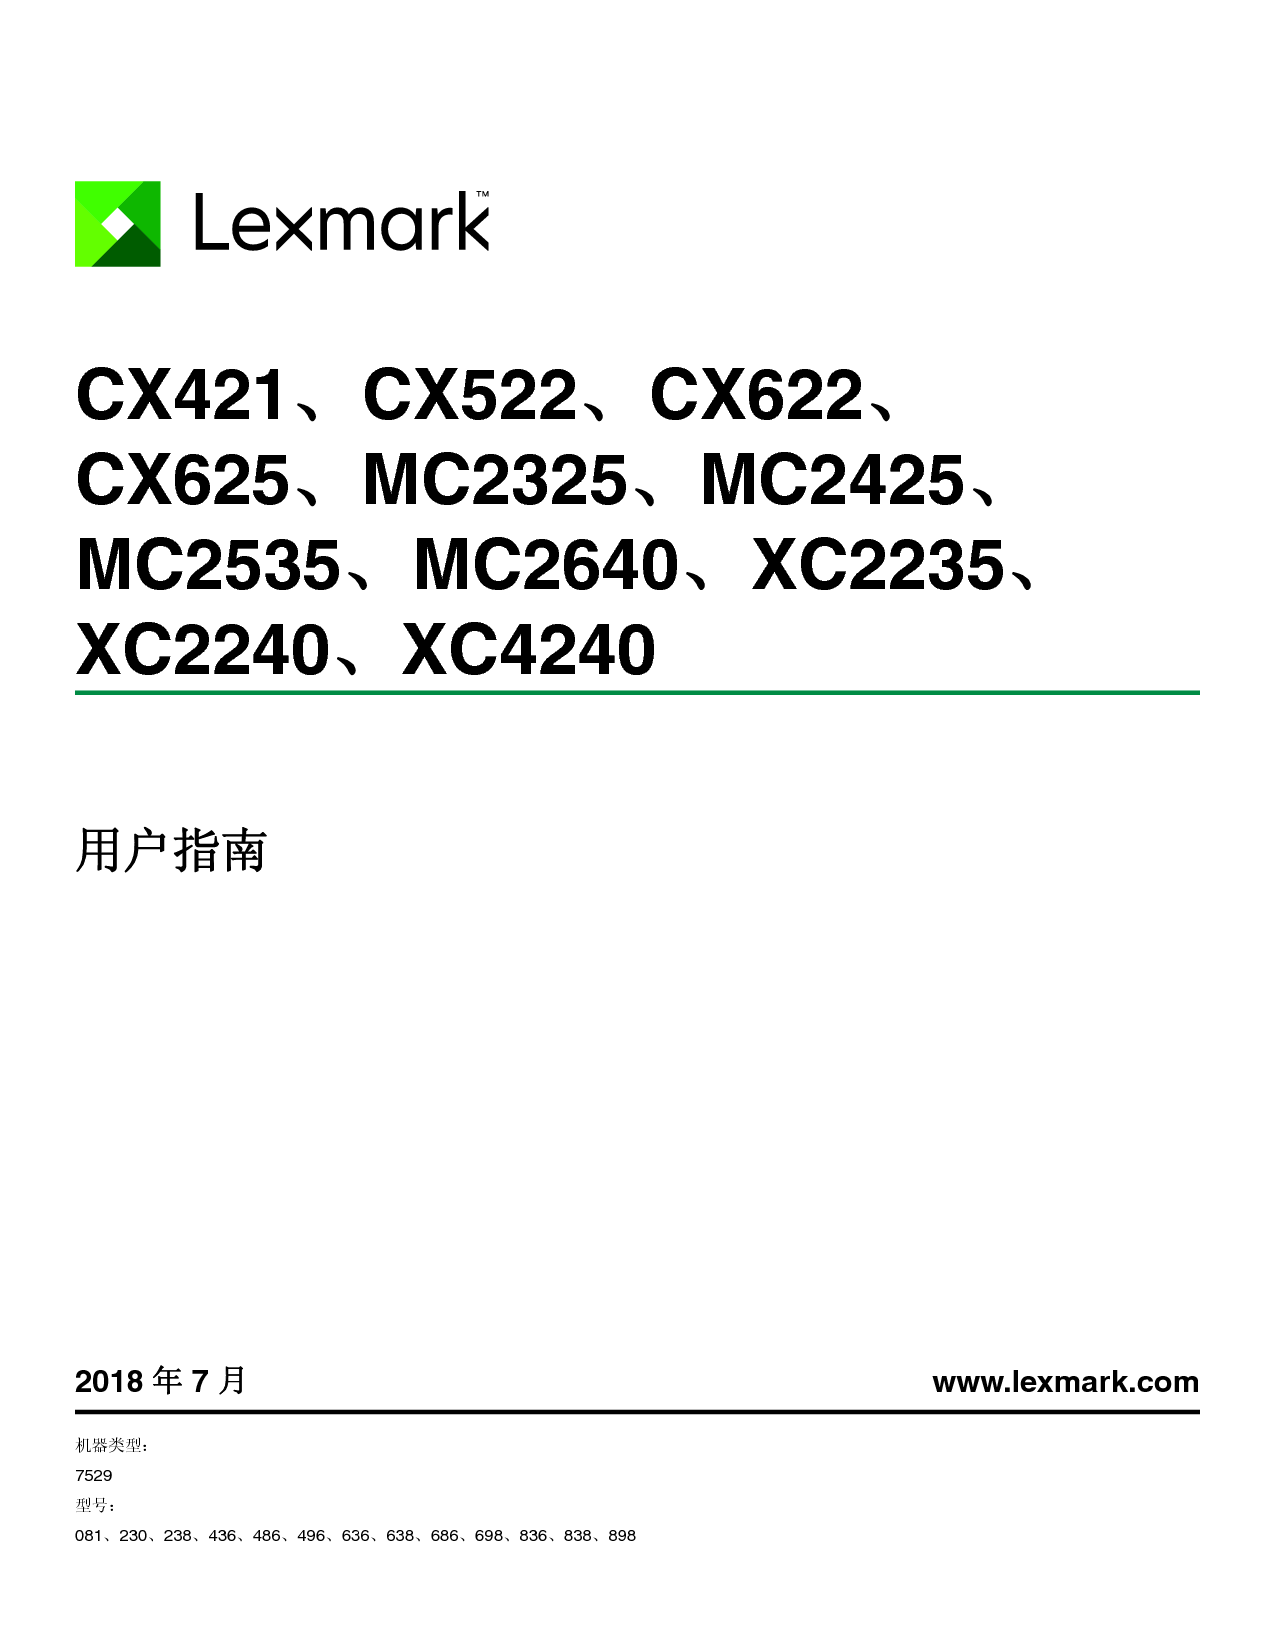 利盟 Lexmark CX421, CX522, CX625, MC2325, MC2640 用户指南 封面